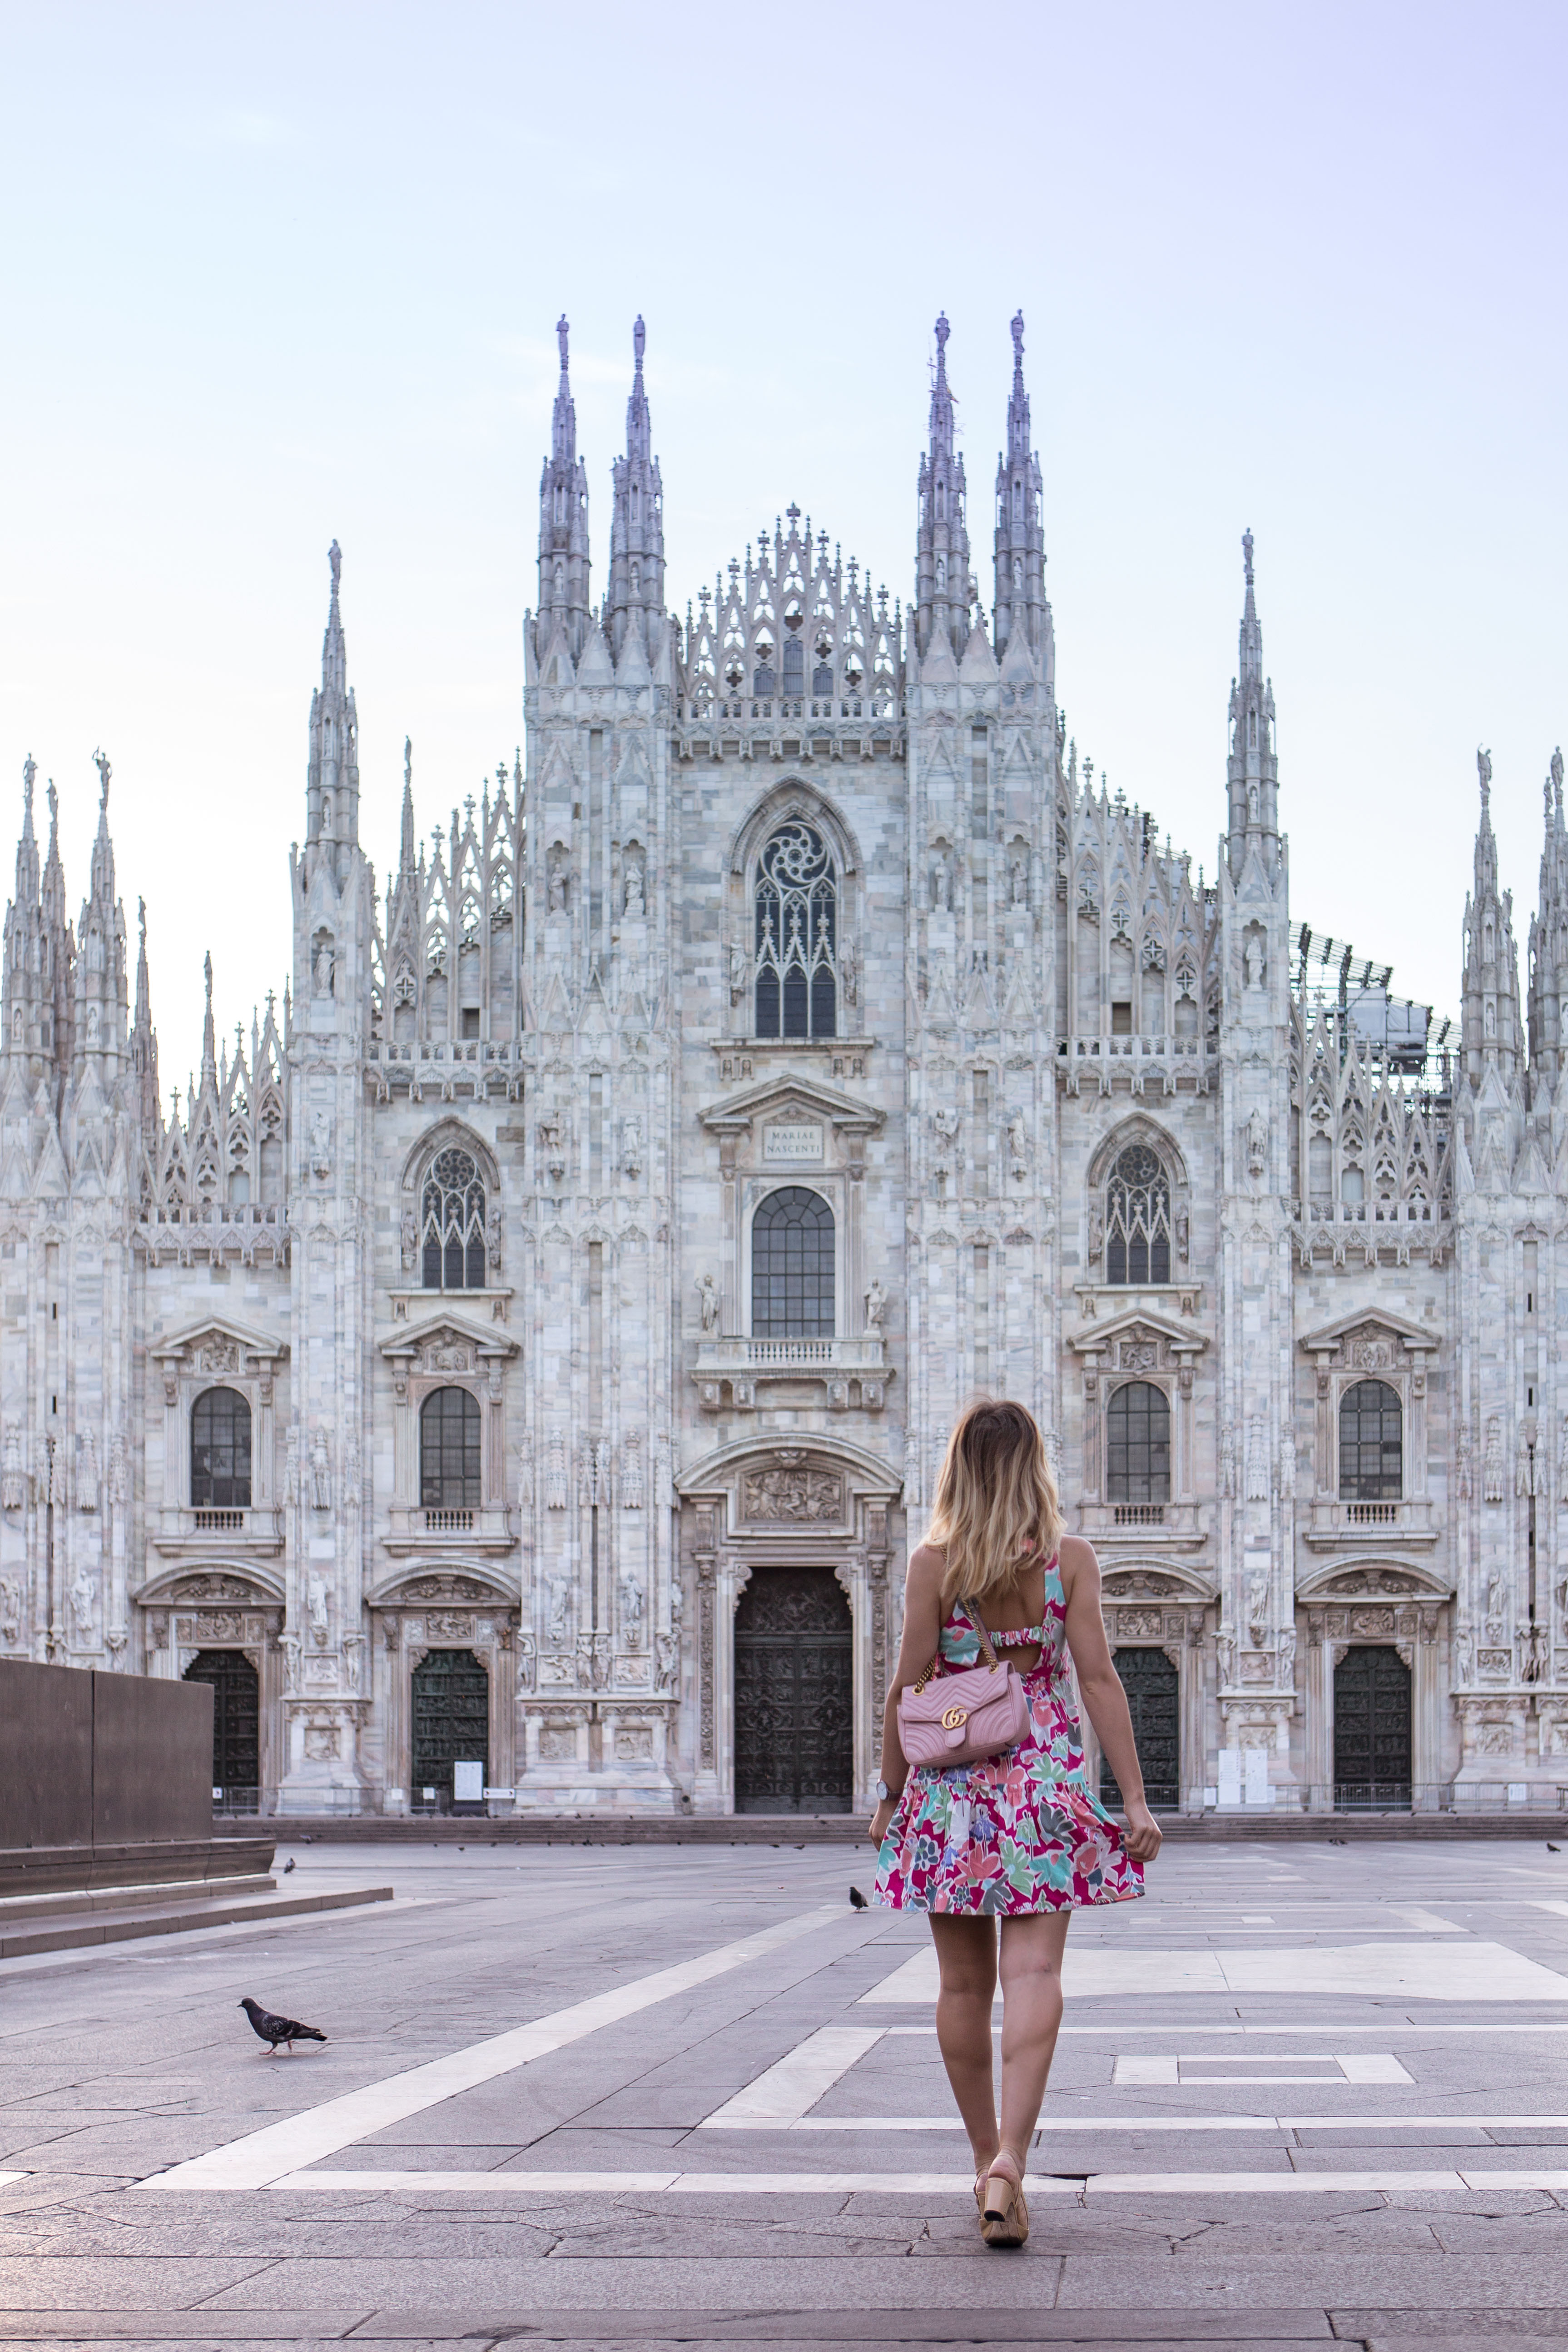 Milan-Duomo_ Duomo Milan: what I wore and the best time to visit